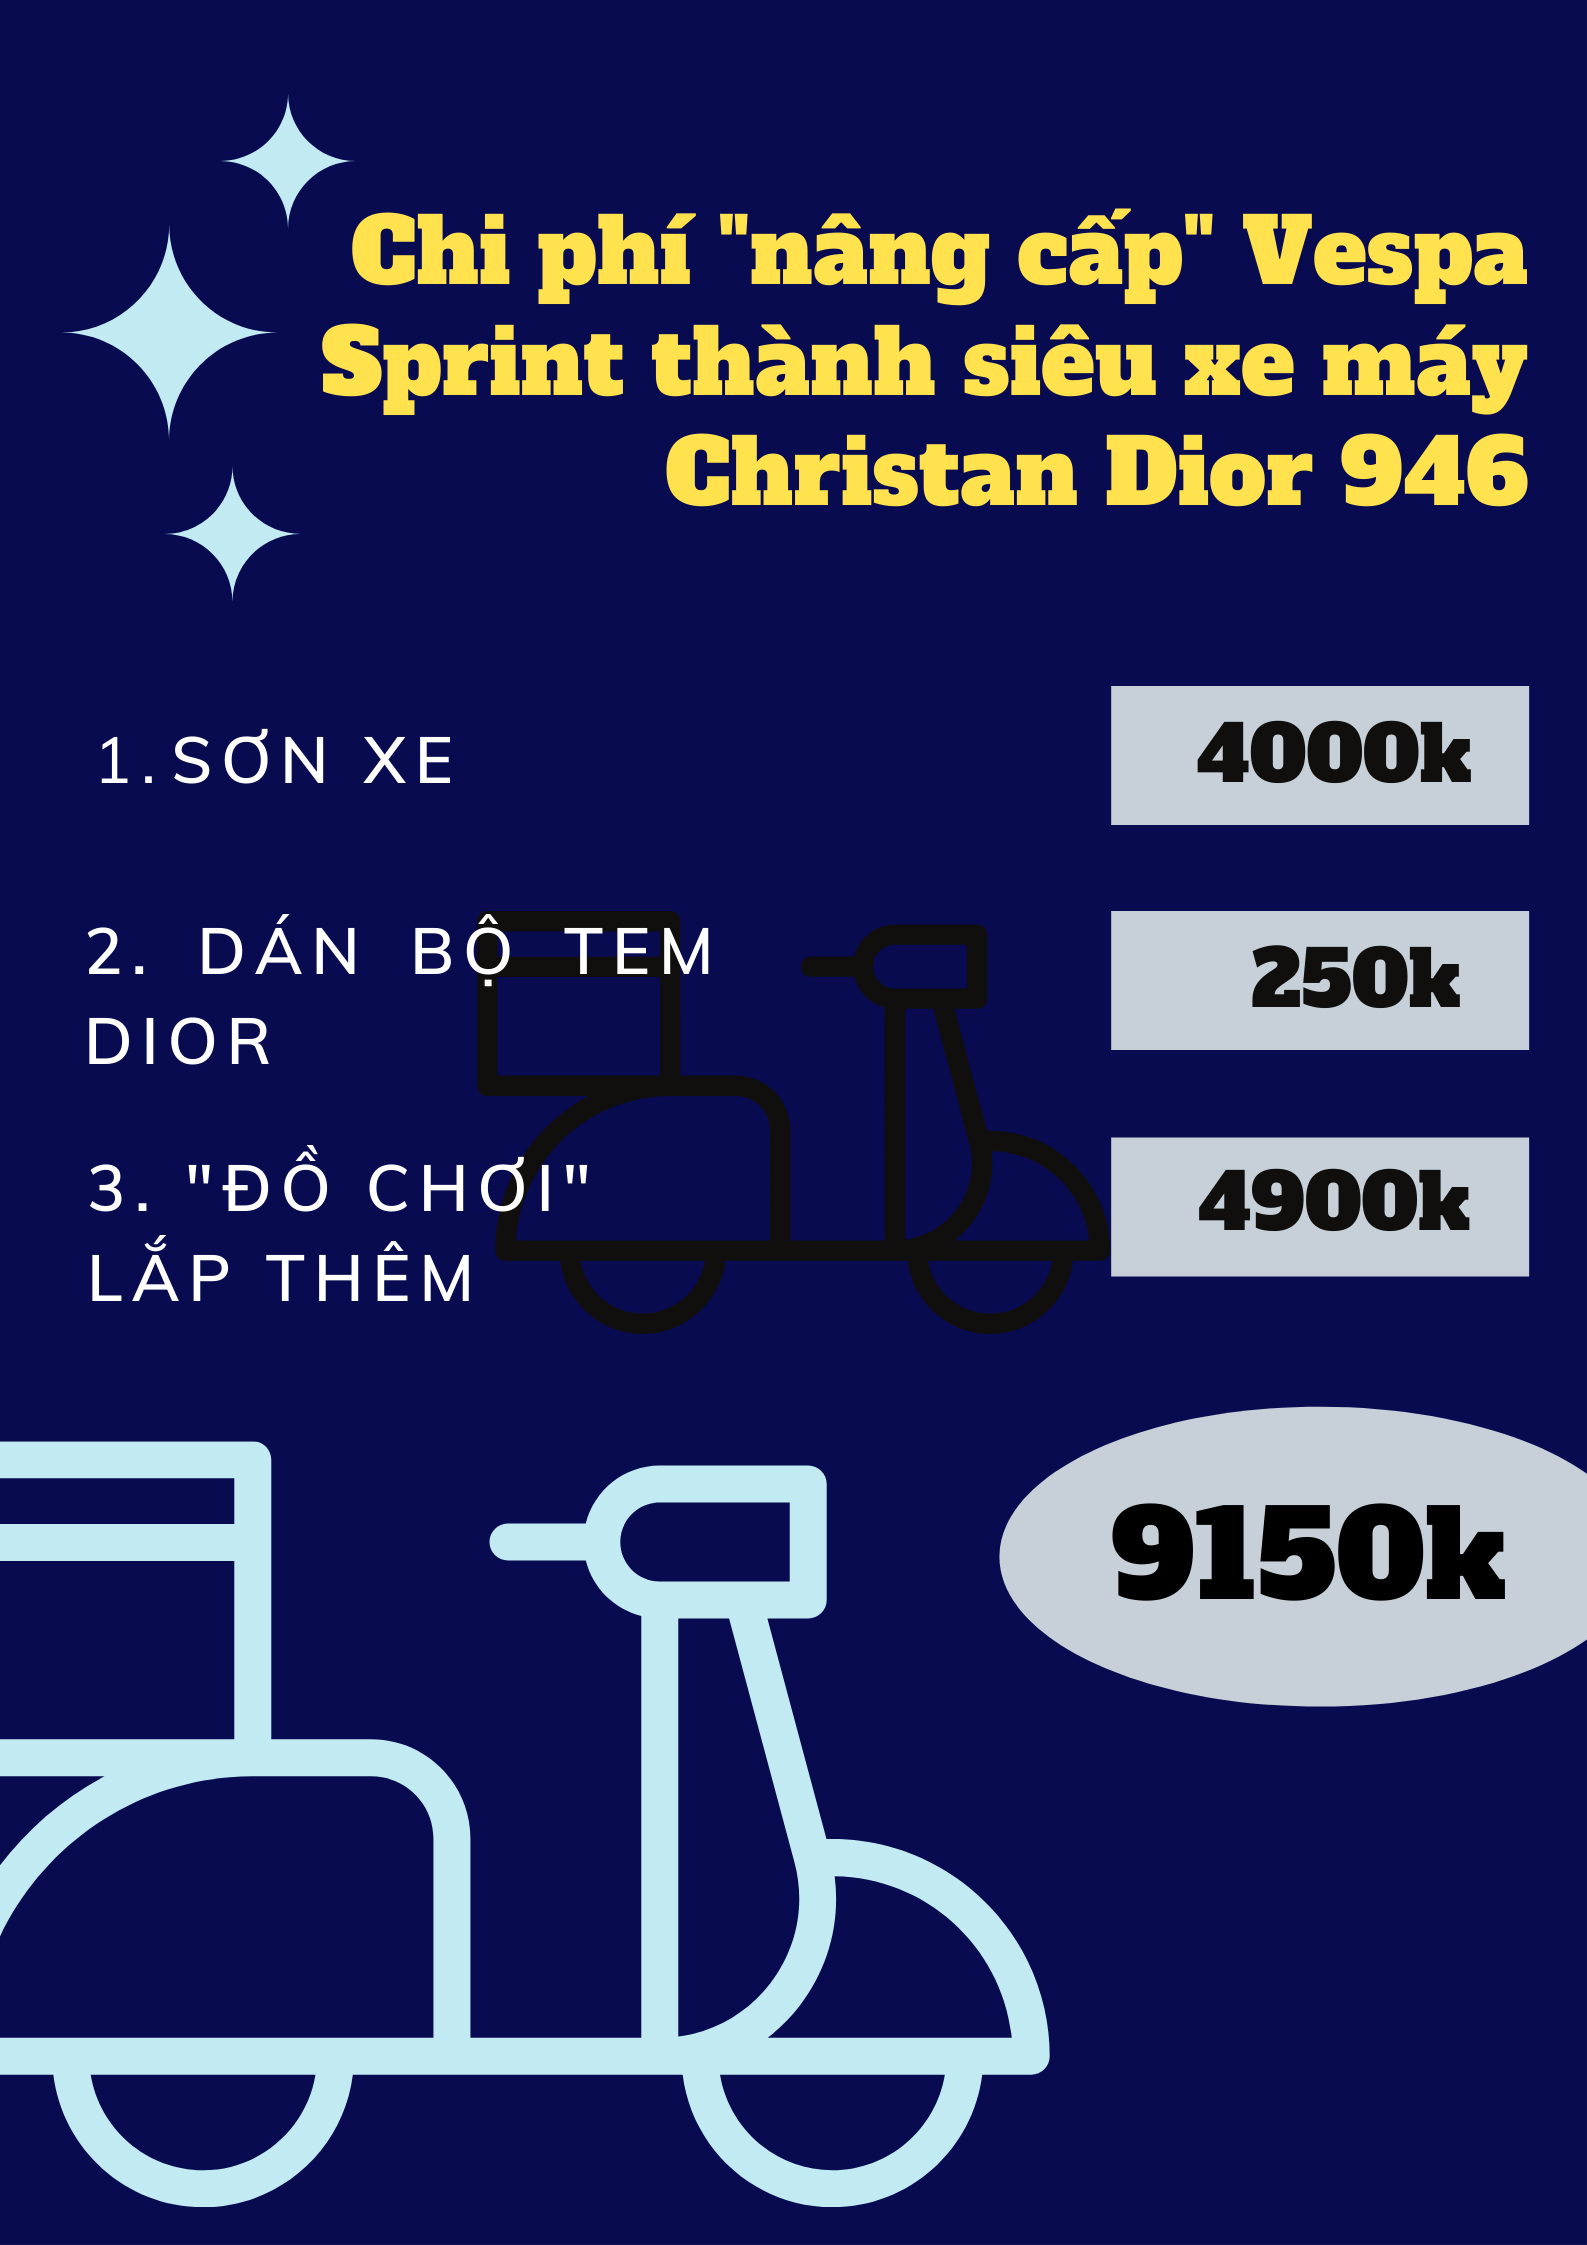 Chỉ với 9 triệu đồng, bạn cũng có thể sở hữu ngay siêu xe máy Vespa 946 Christian Dior &quot;hot&quot; nhất thế kỷ? - Ảnh 4.